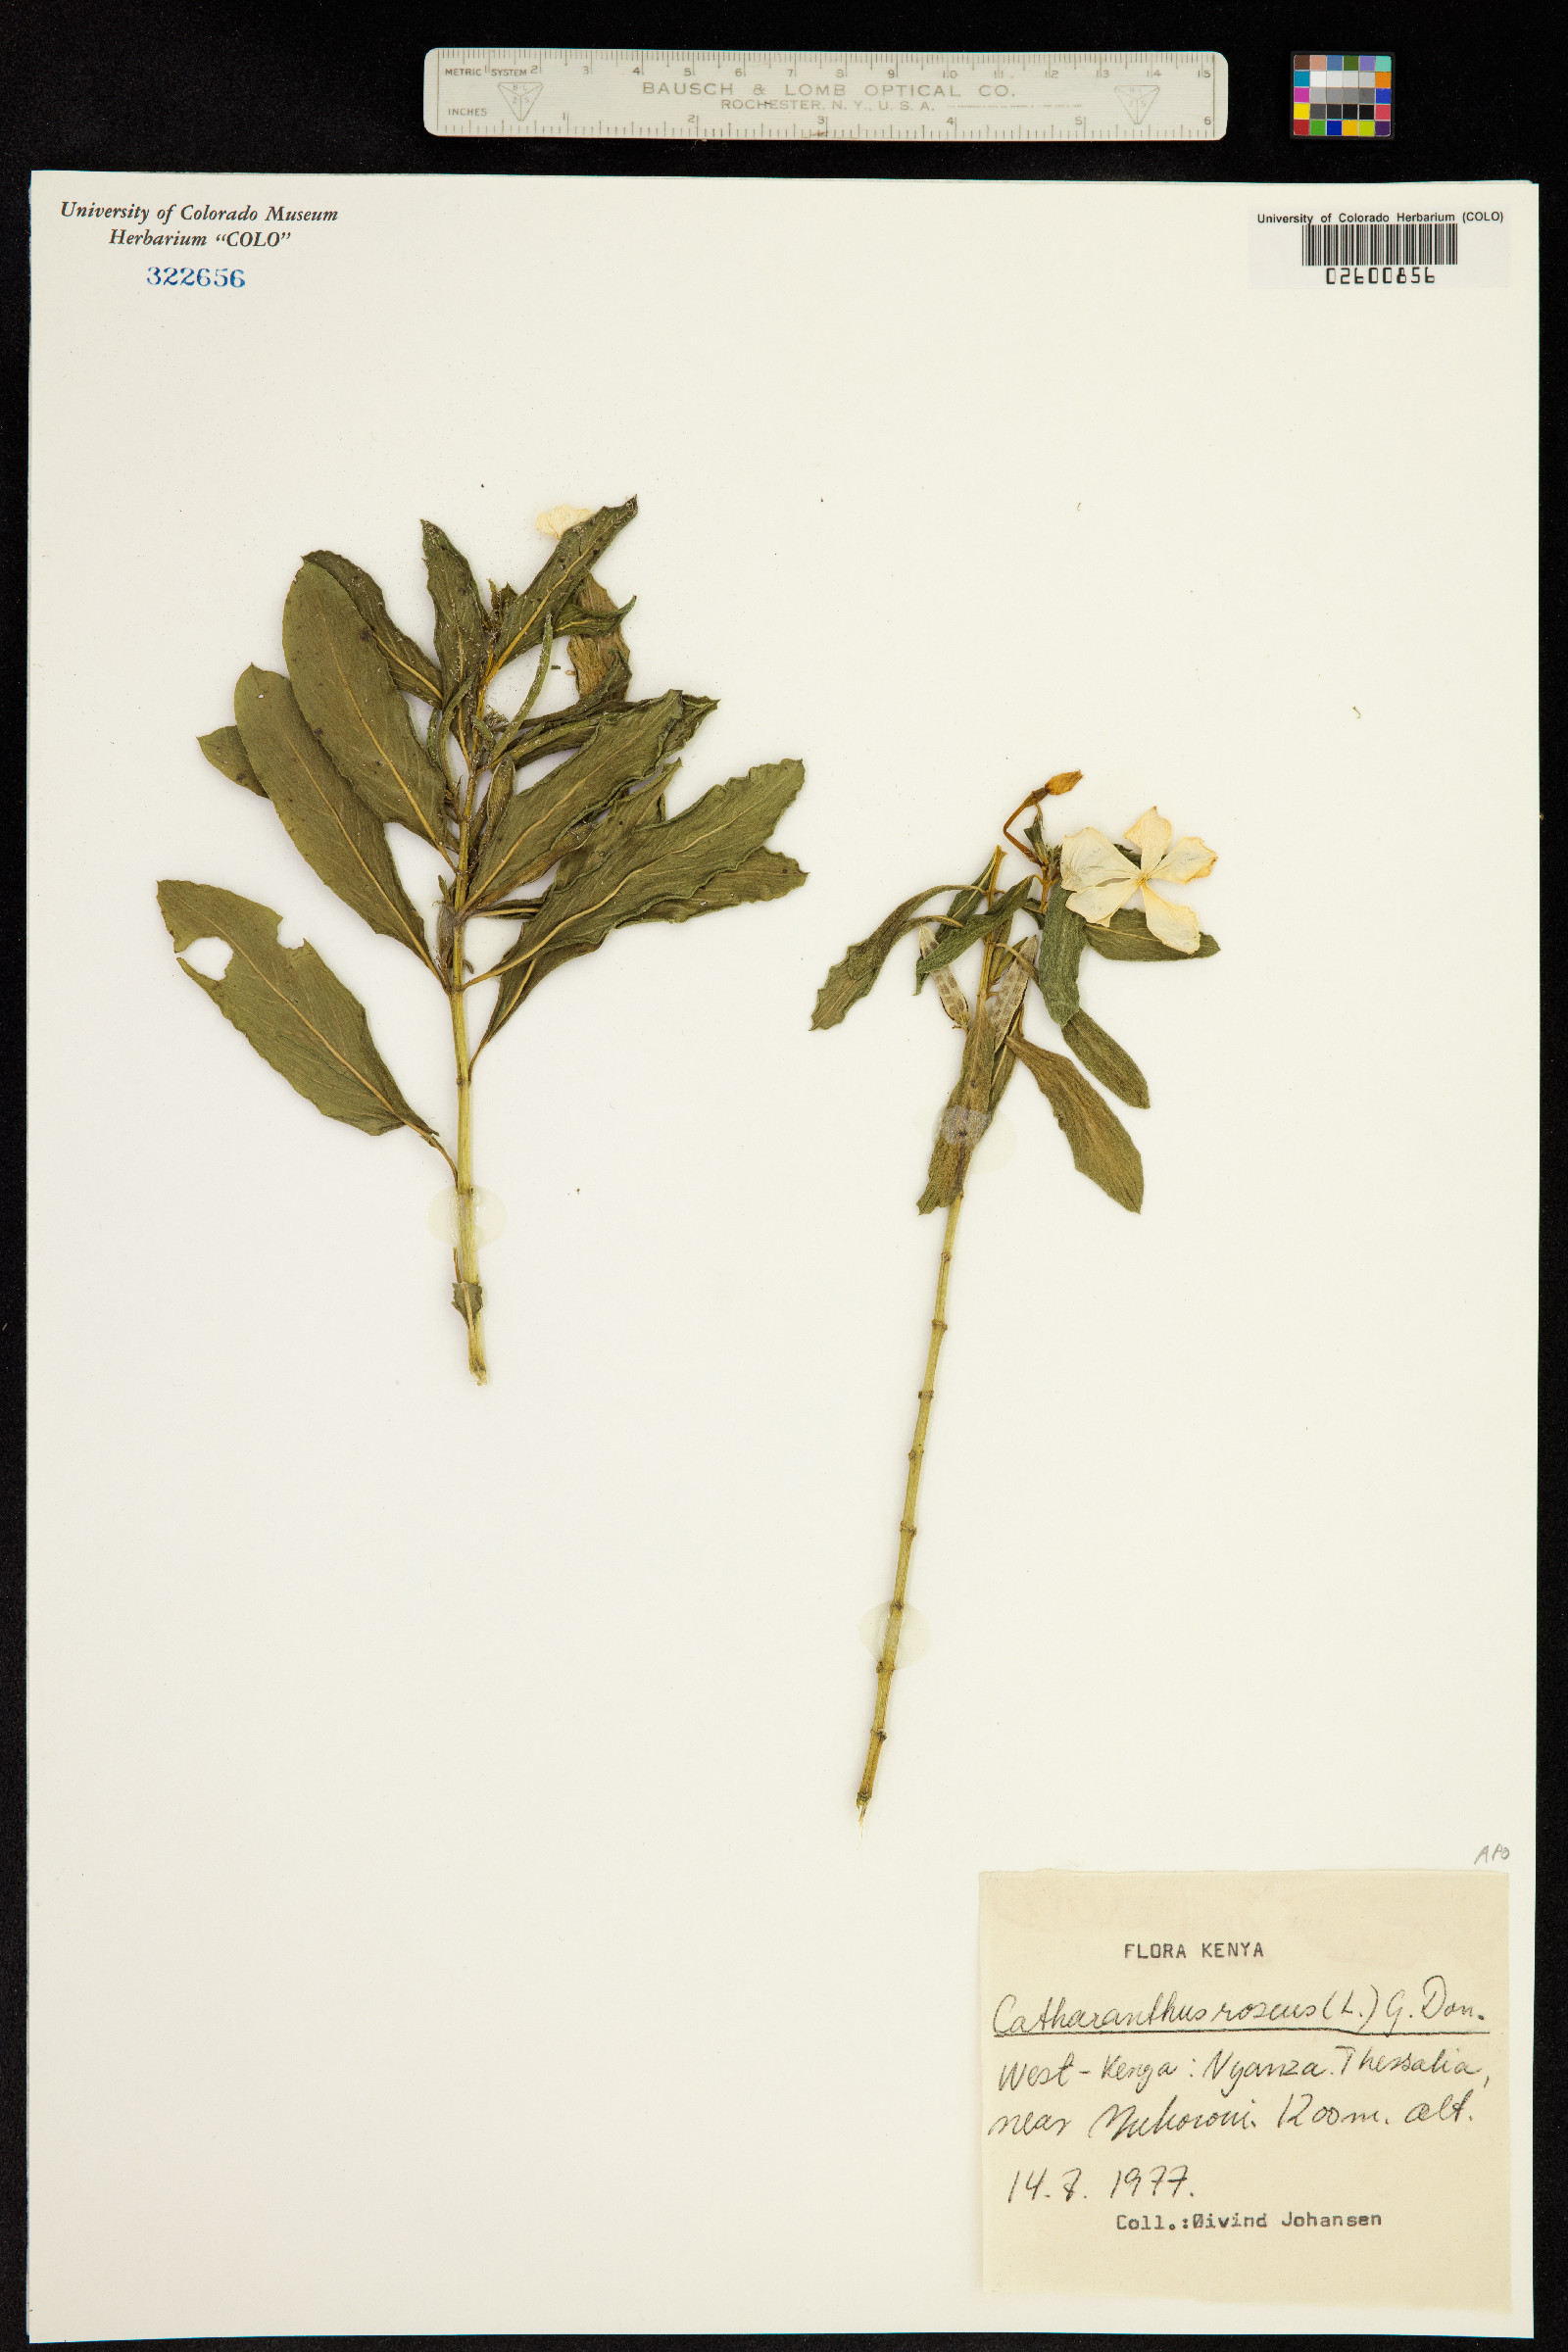 Catharanthus image